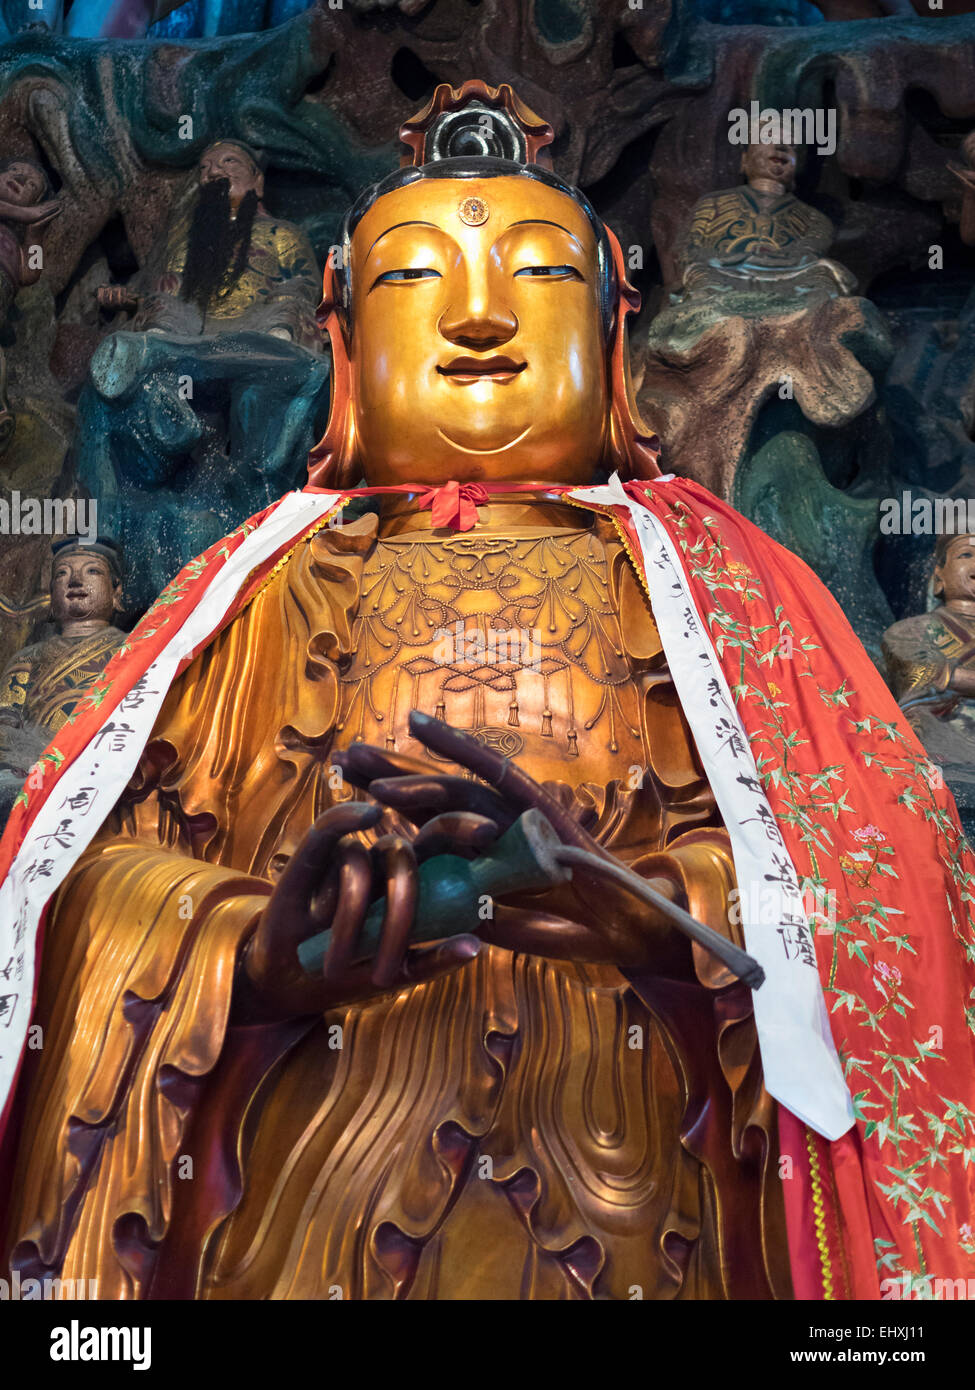 Jade Buddha temple in Shanghai, China Stock Photo